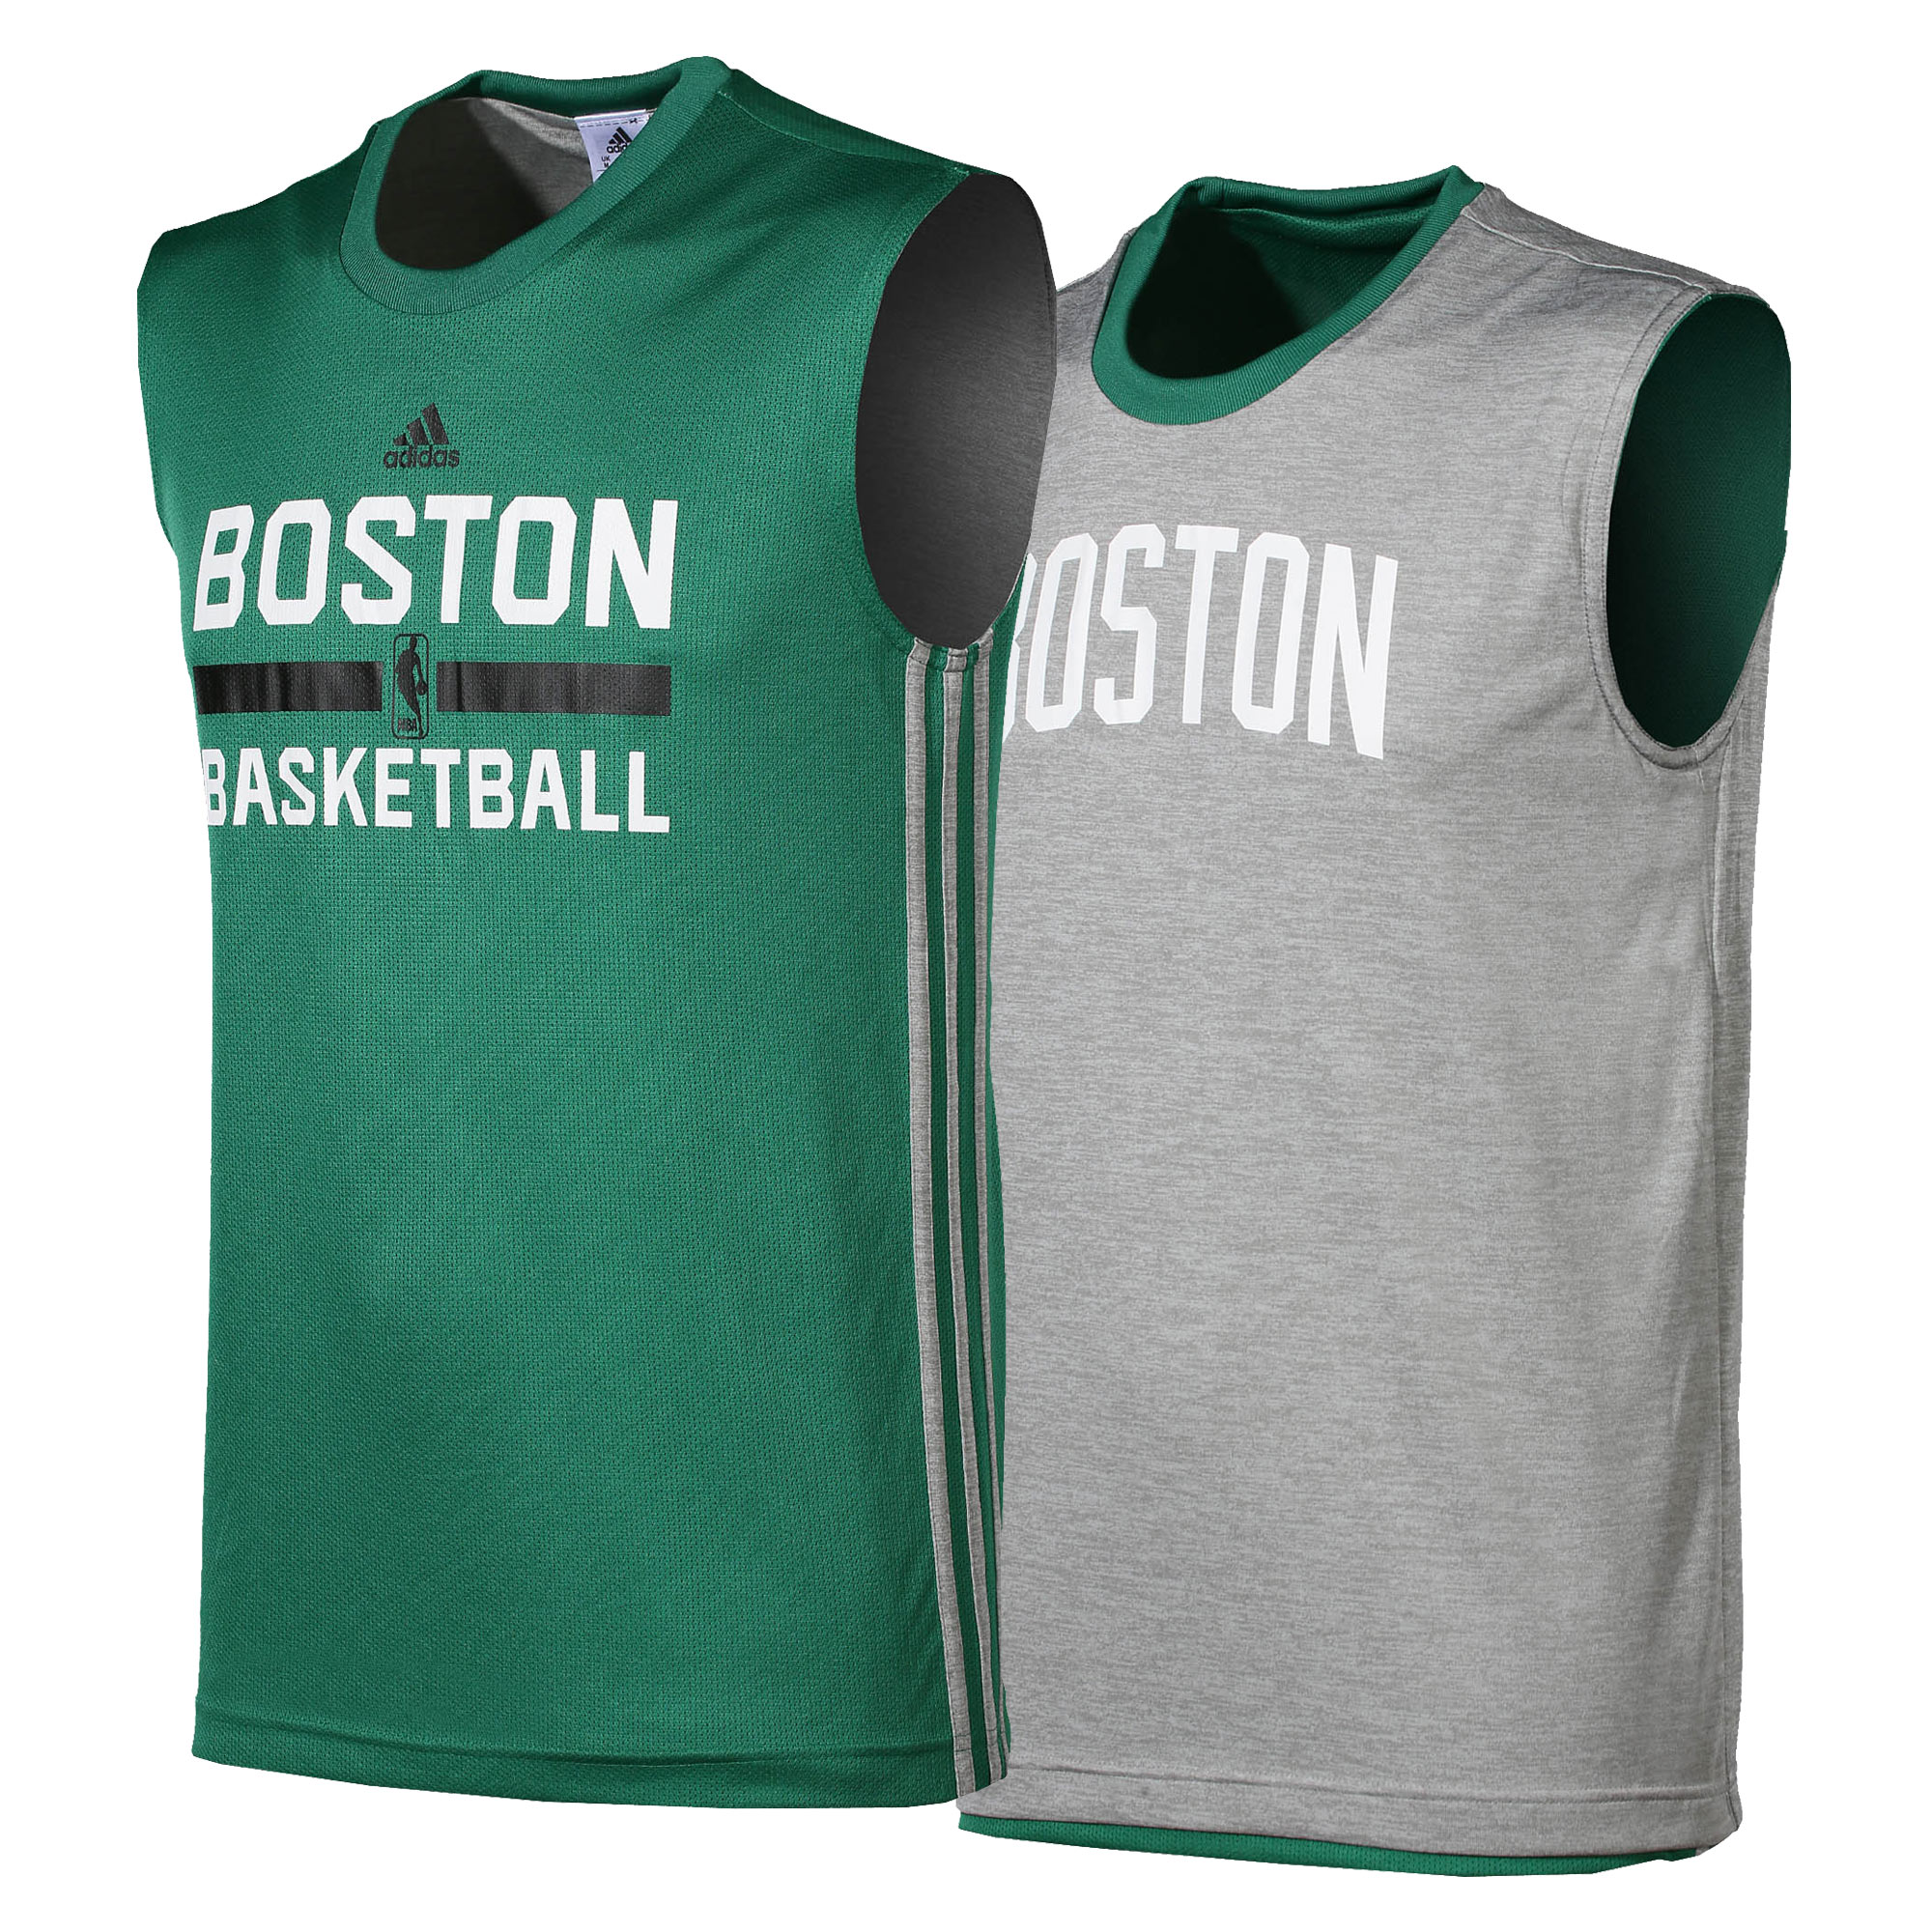 Adidas NBA Camiseta Boston Rev (verde/gris)